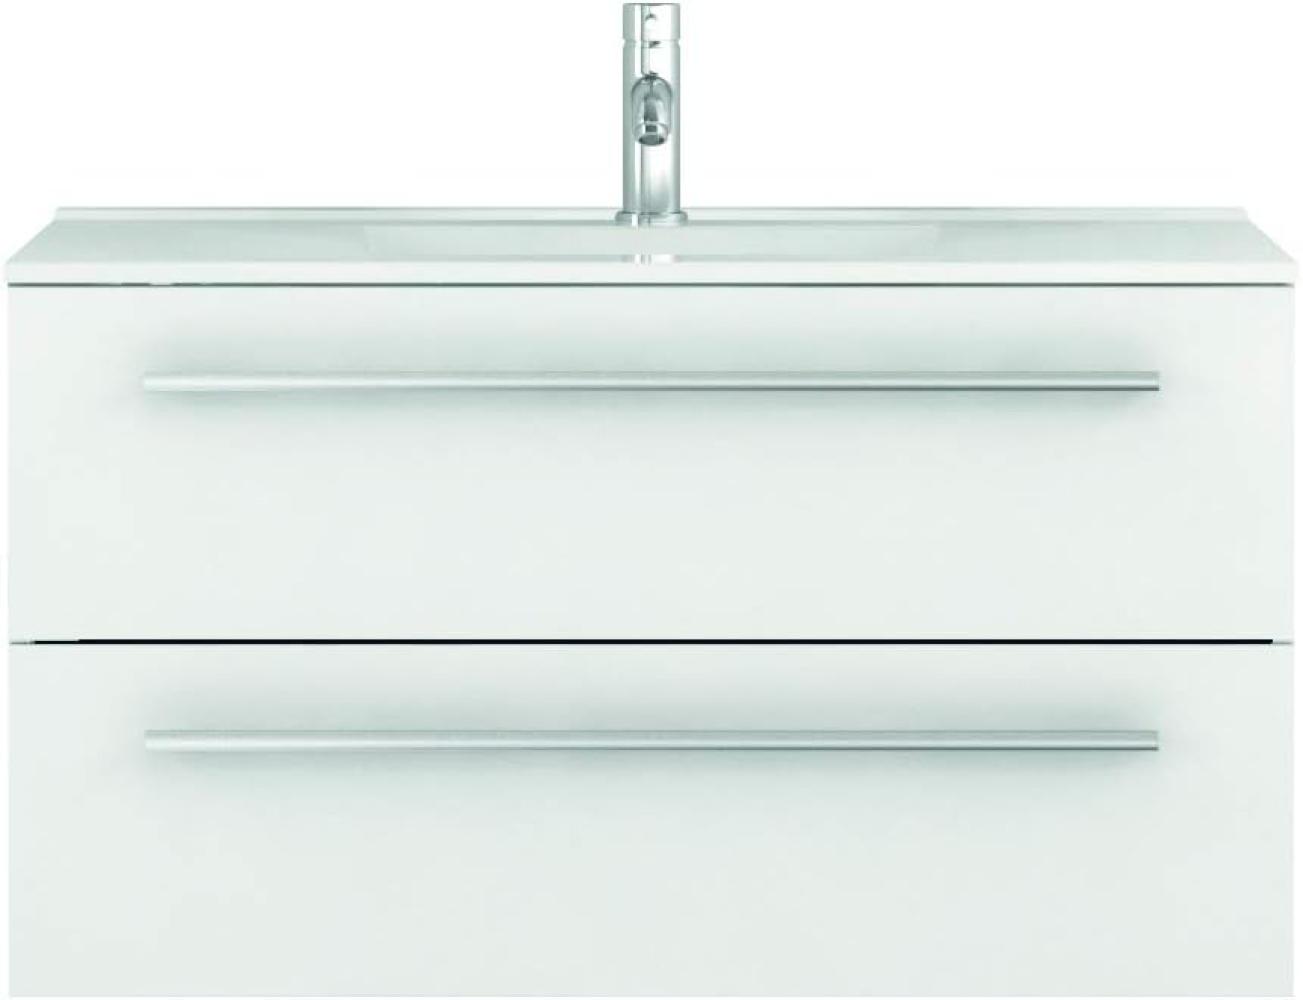 Sieper I Waschtischunterschrank 90 x 50 cm mit Waschtisch, Libato Badezimmermöbel, Badezimmerunterschrank I Weiß Bild 1